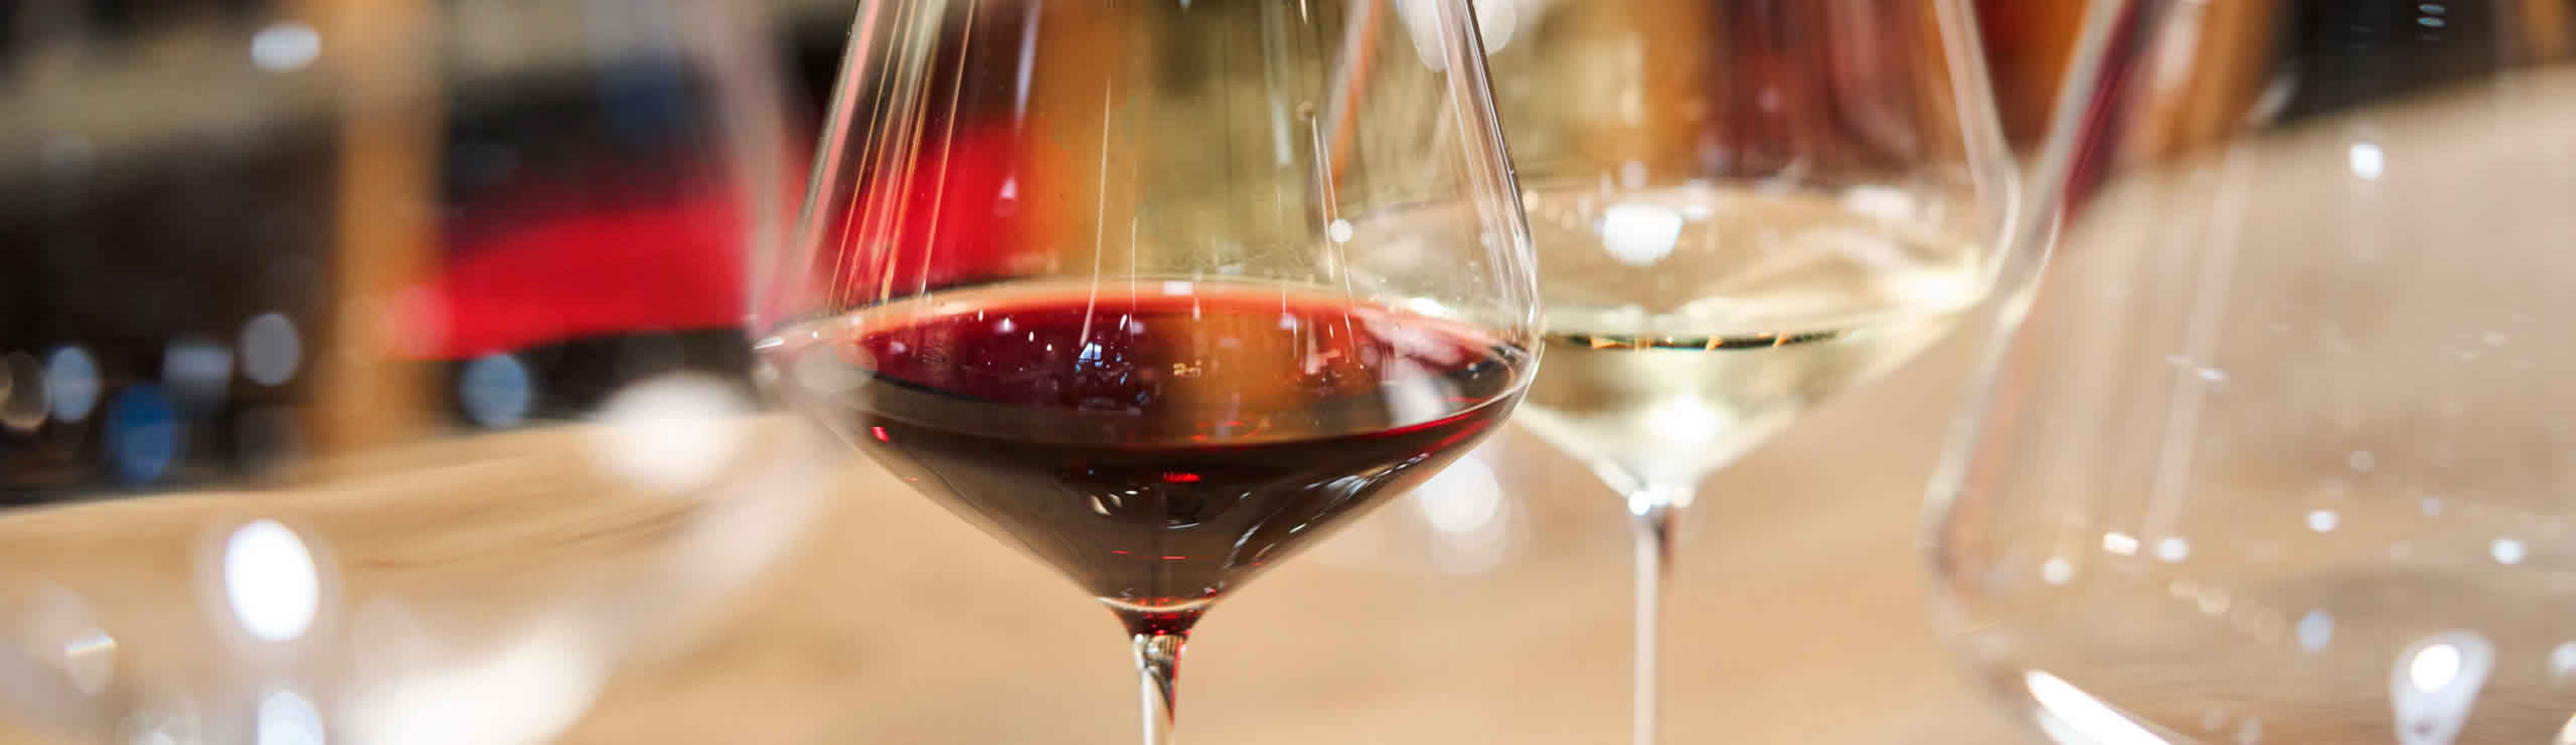 Weingläser auf einem Tisch mit Rot- und Weisswein aus der Siebe Dupf Kellerei